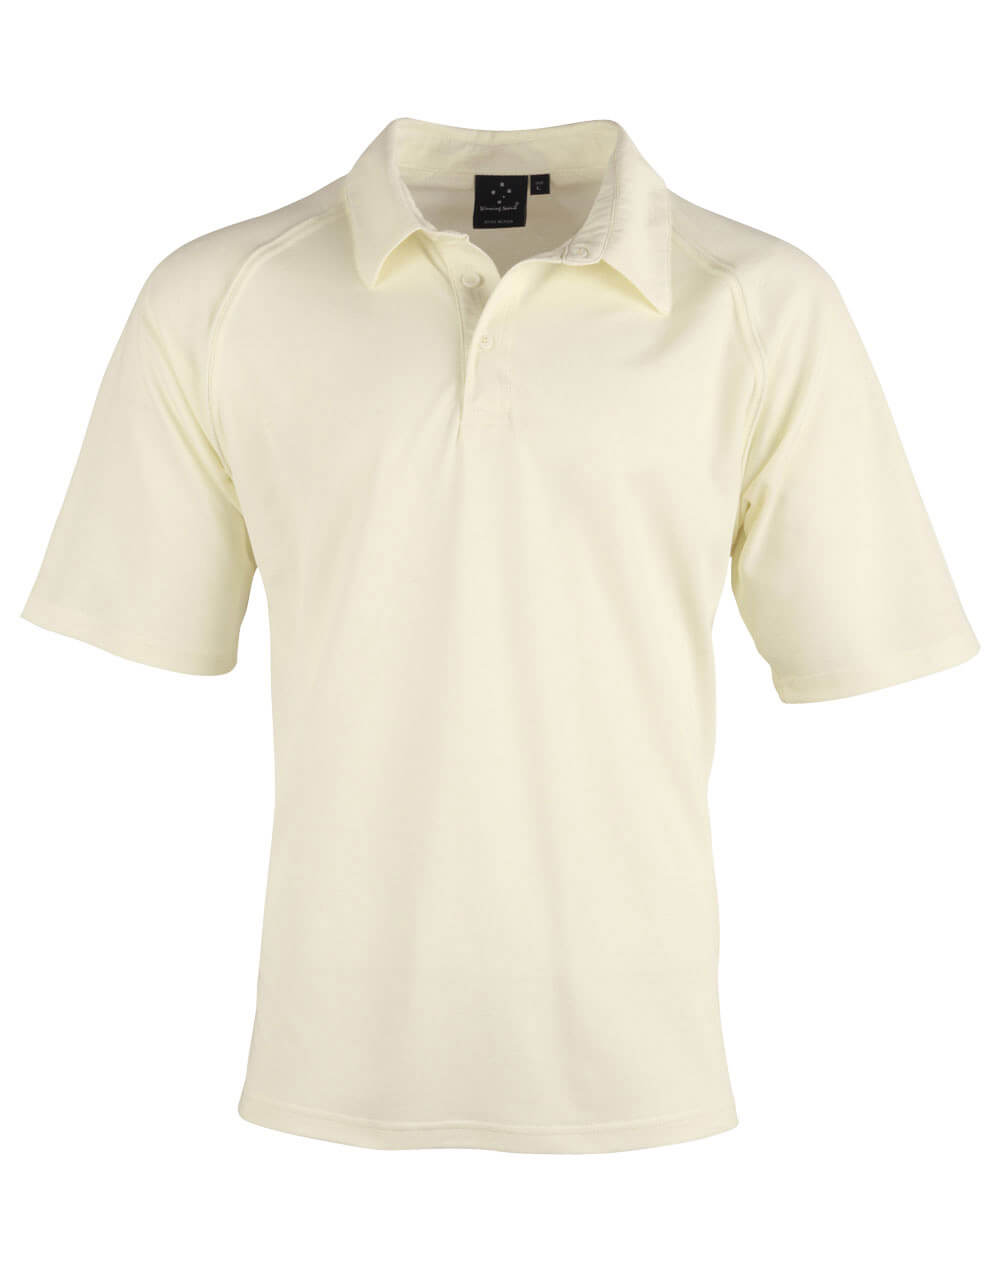 PS29 Cricket Polo Short Sleeve Men's